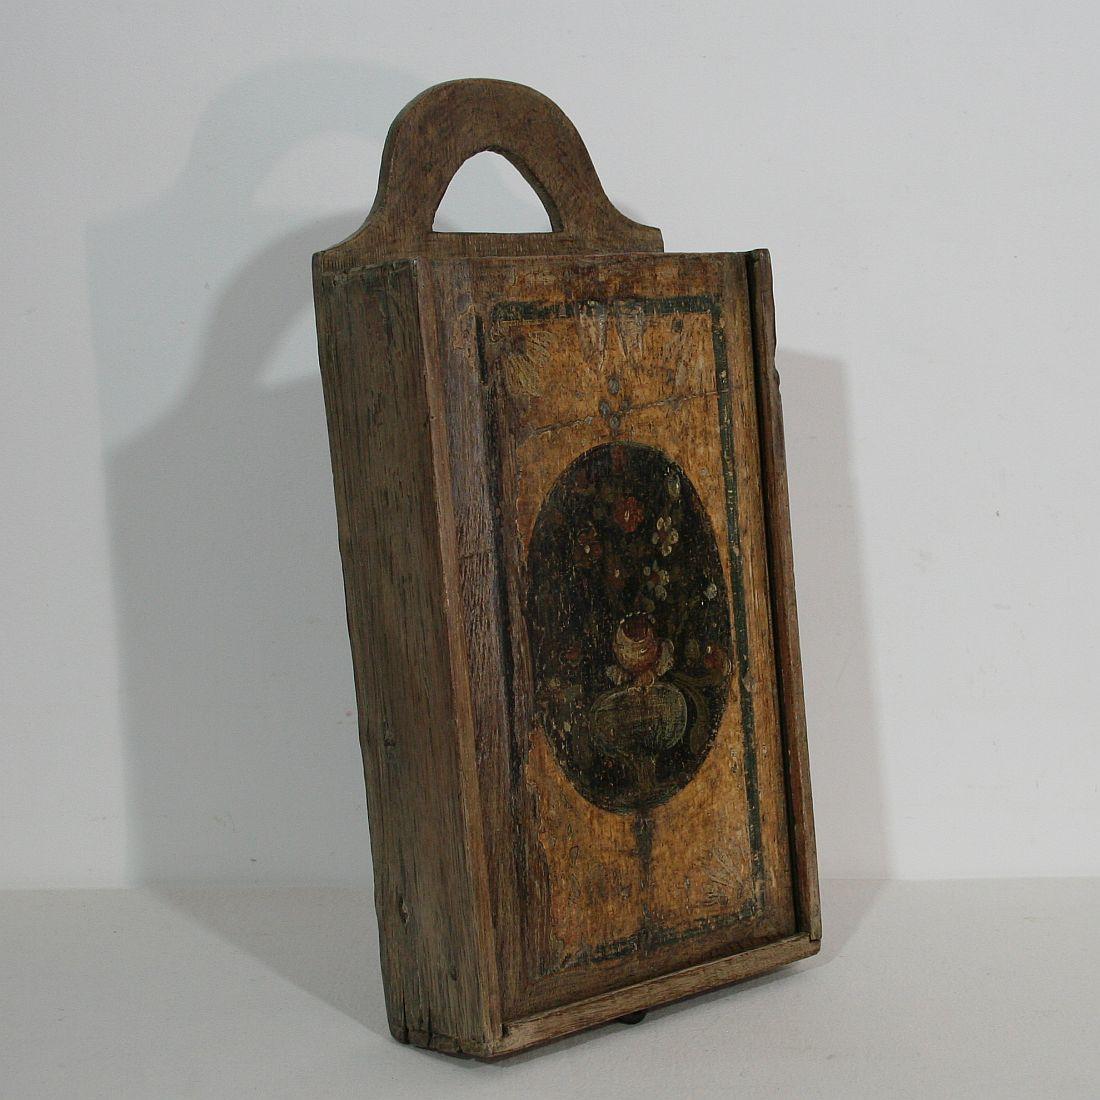 Hand-Crafted 18th Century Dutch Folk Art Wooden School Bag or Box